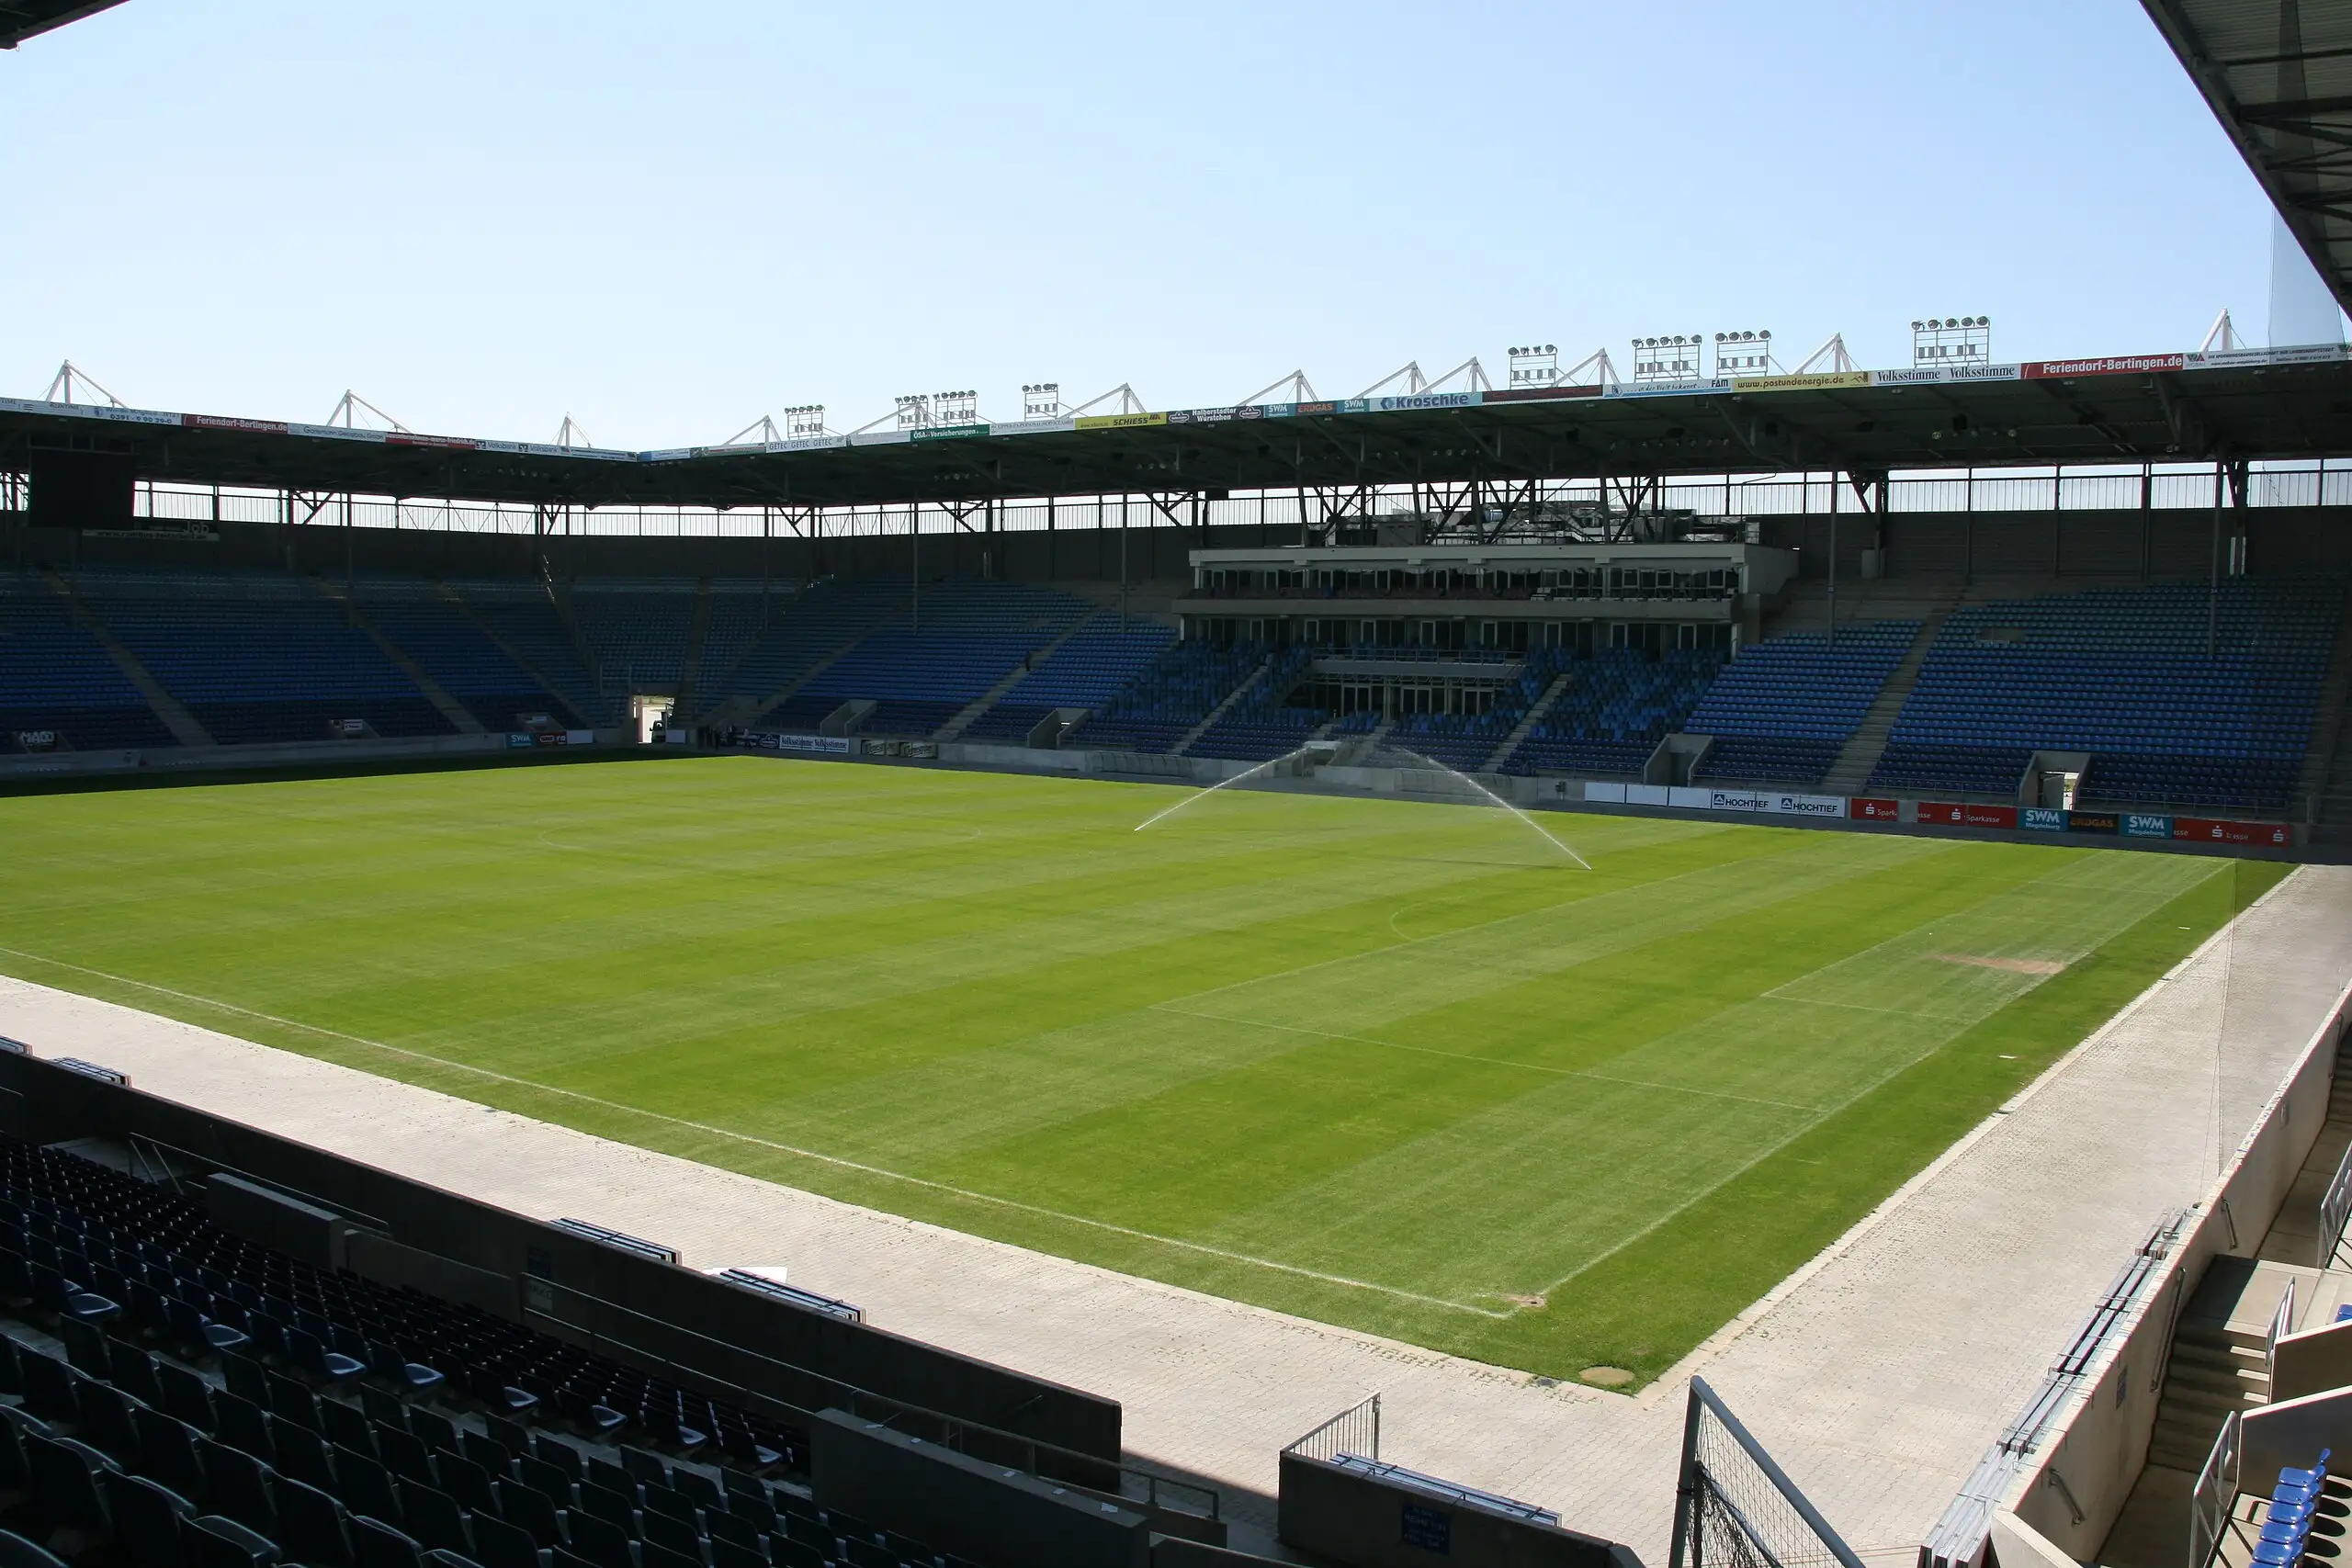 Sân vận động MDCC-Arena – Ngôi nhà của câu lạc bộ Magdeburg